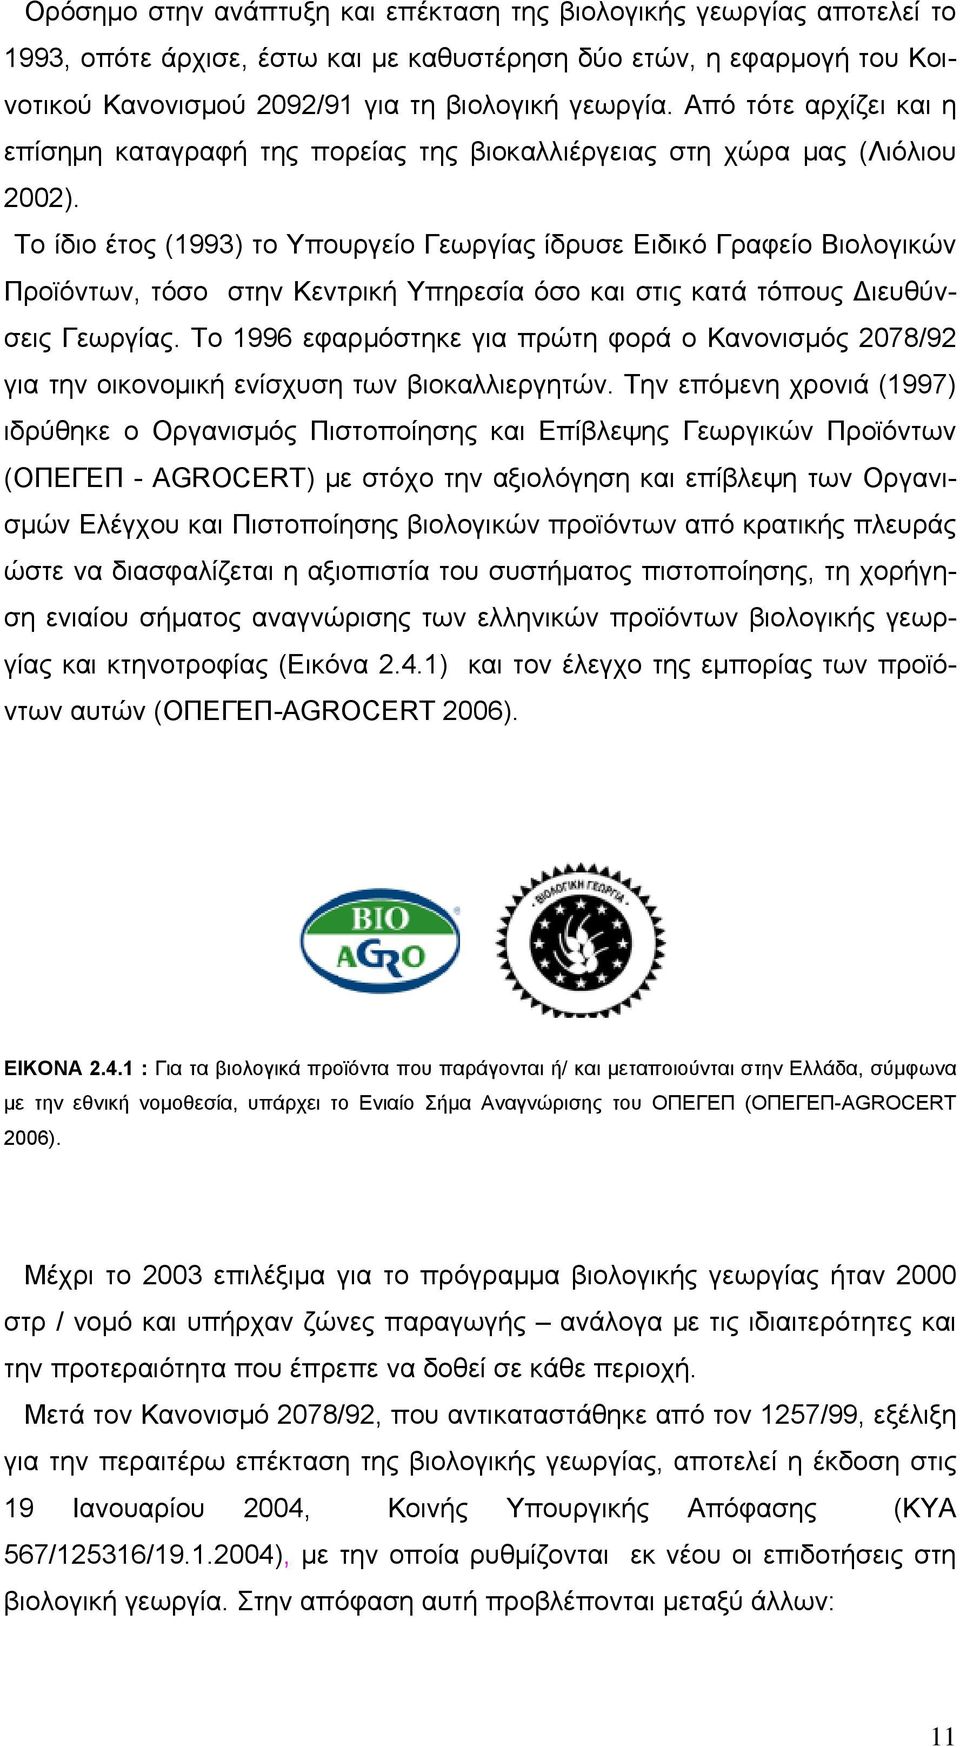 Το ίδιο έτος (1993) το Υπουργείο Γεωργίας ίδρυσε Ειδικό Γραφείο Βιολογικών Προϊόντων, τόσο στην Κεντρική Υπηρεσία όσο και στις κατά τόπους Διευθύνσεις Γεωργίας.